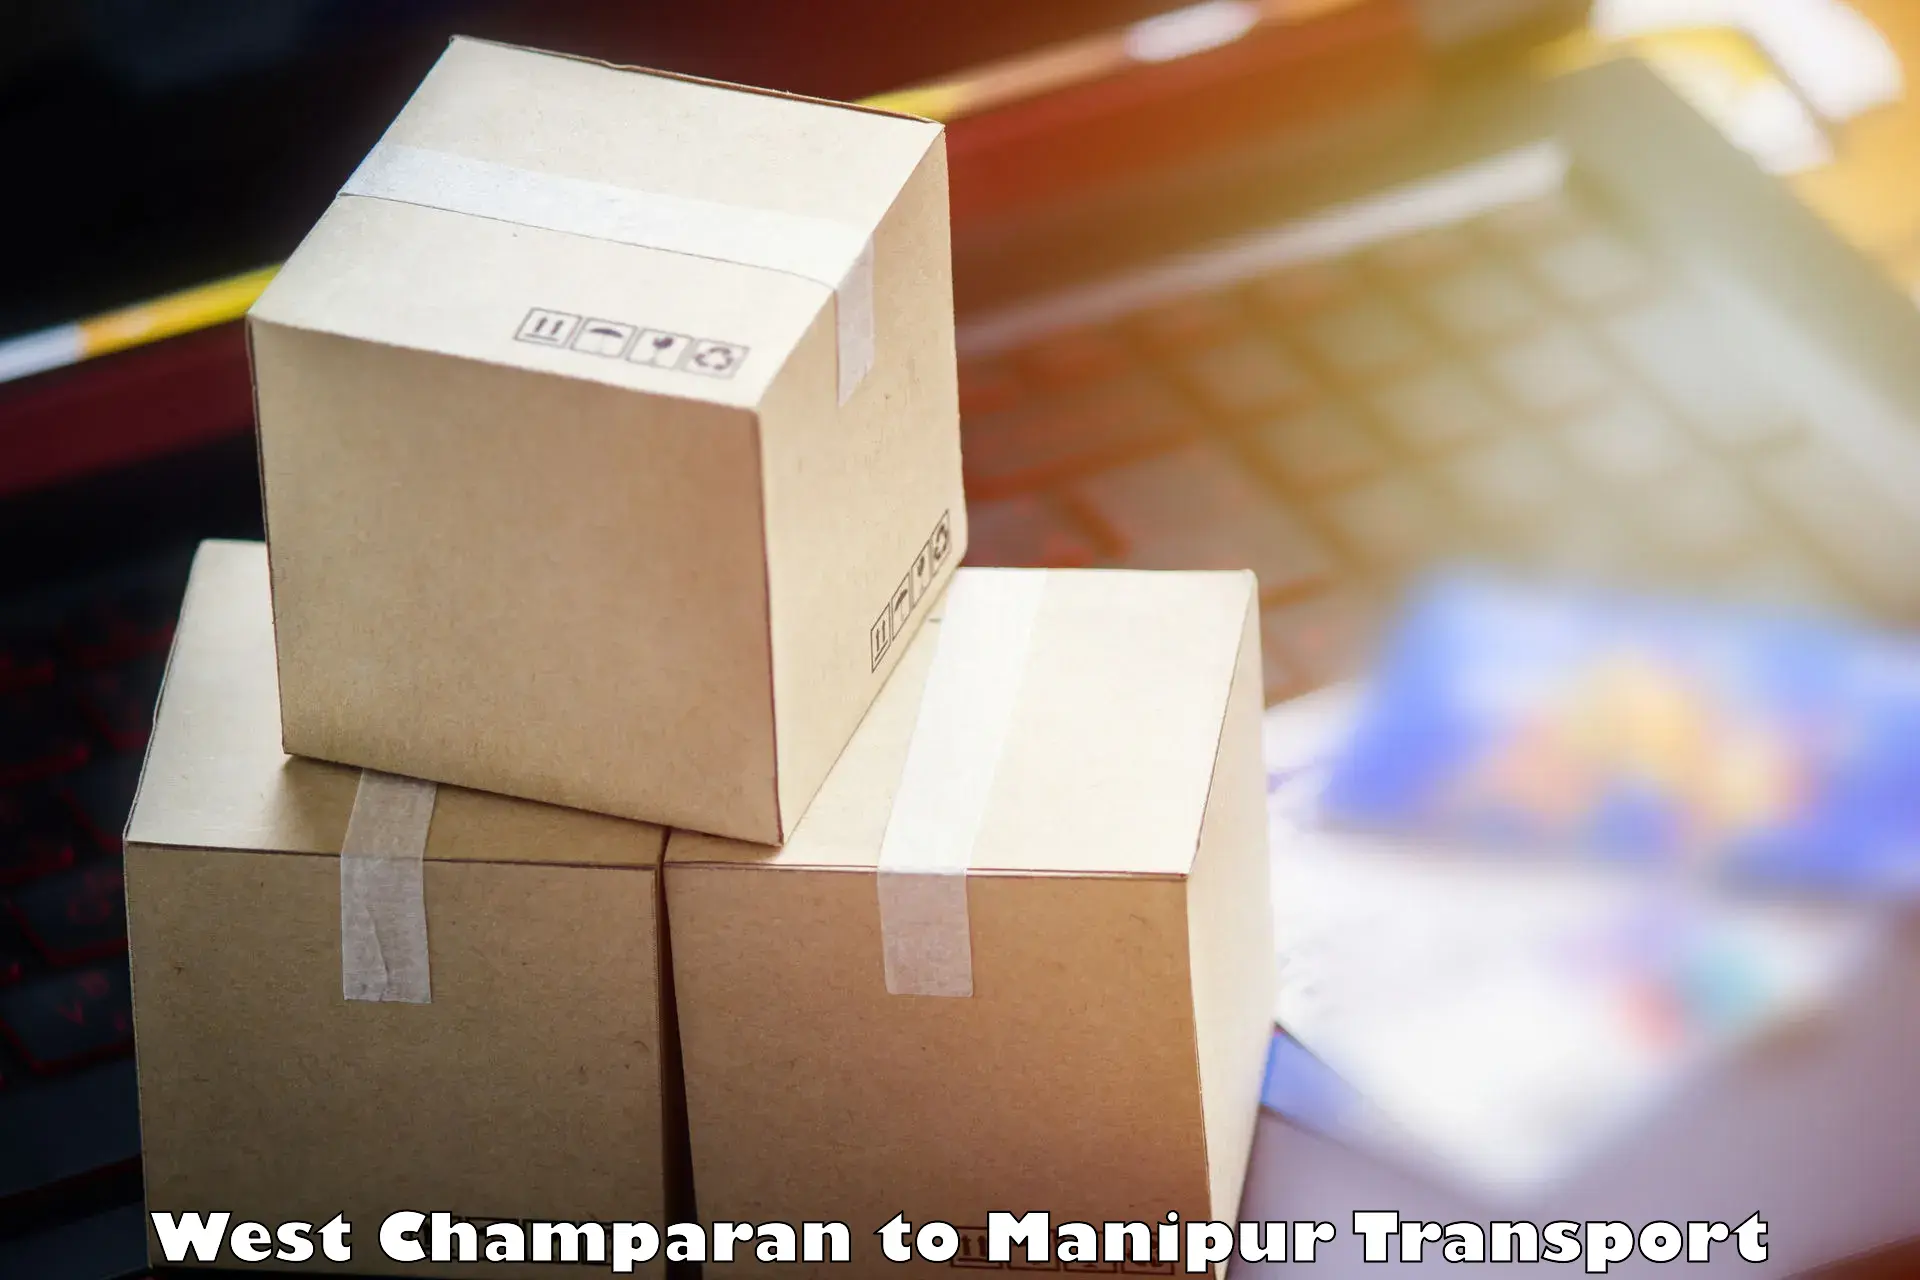 Nationwide transport services West Champaran to Churachandpur